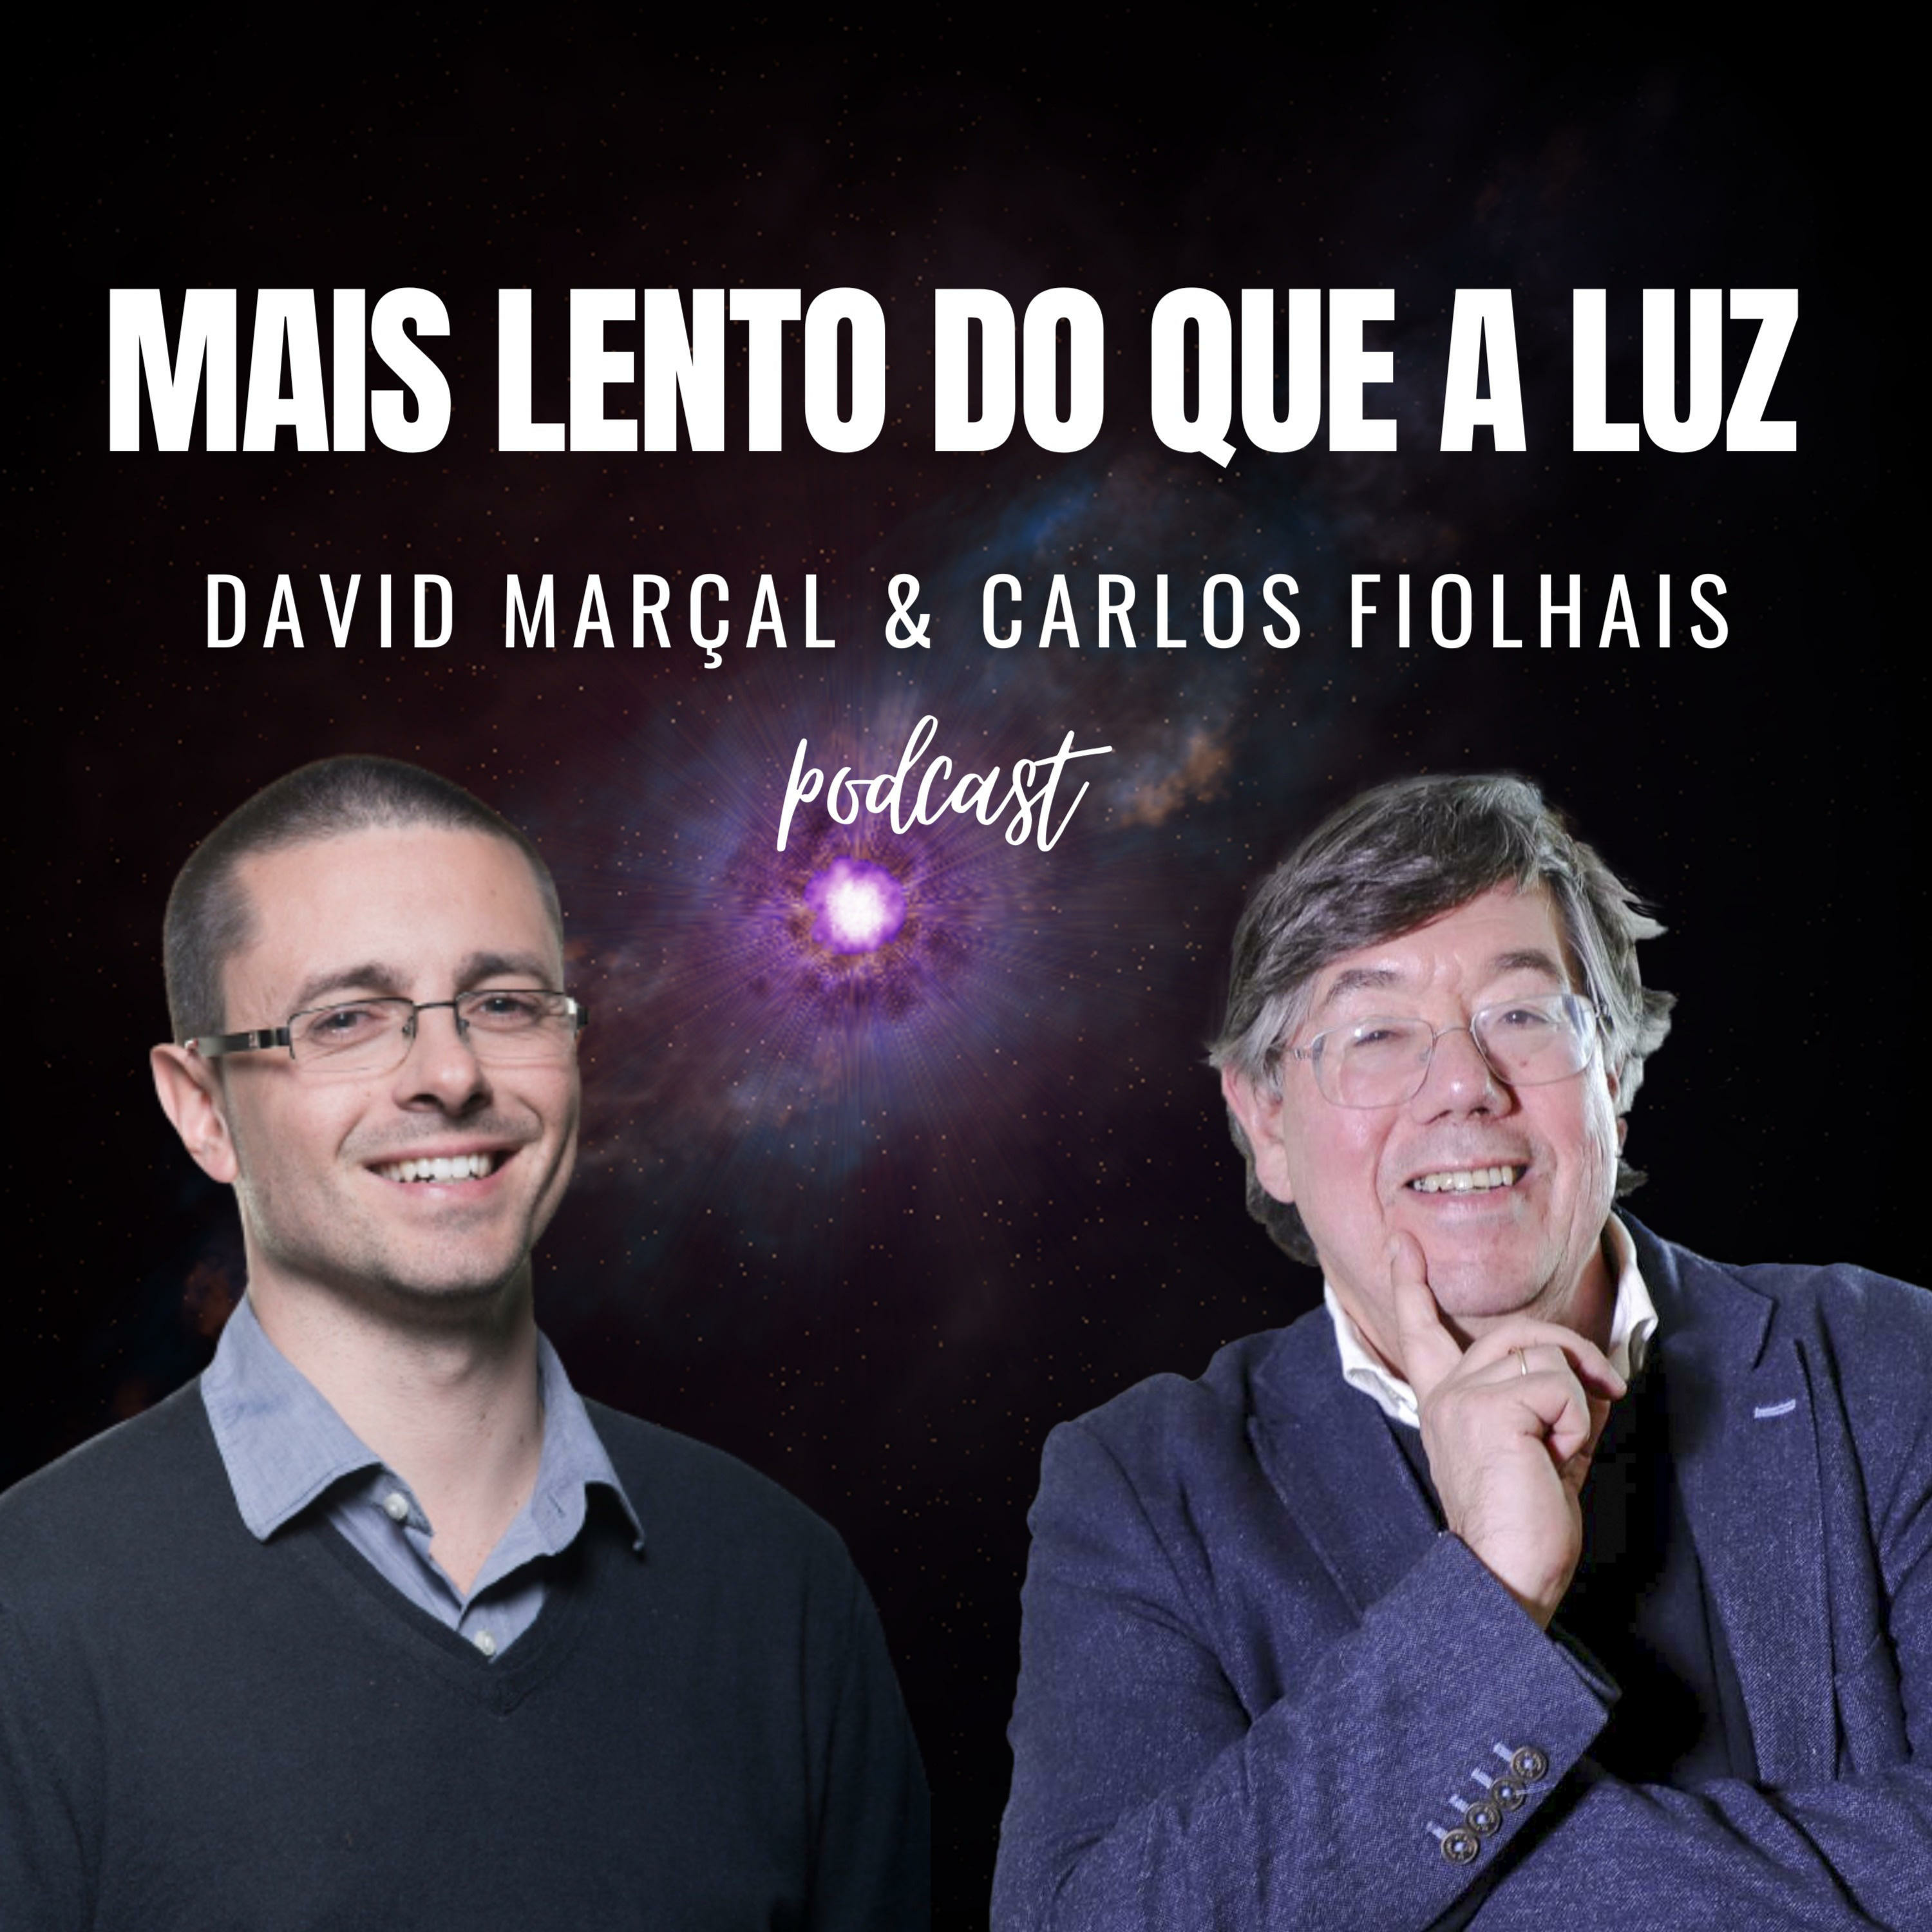 Os Cientistas Ainda de Pé, com Bruno Pinto, João Cruz e Leonor Medeiros